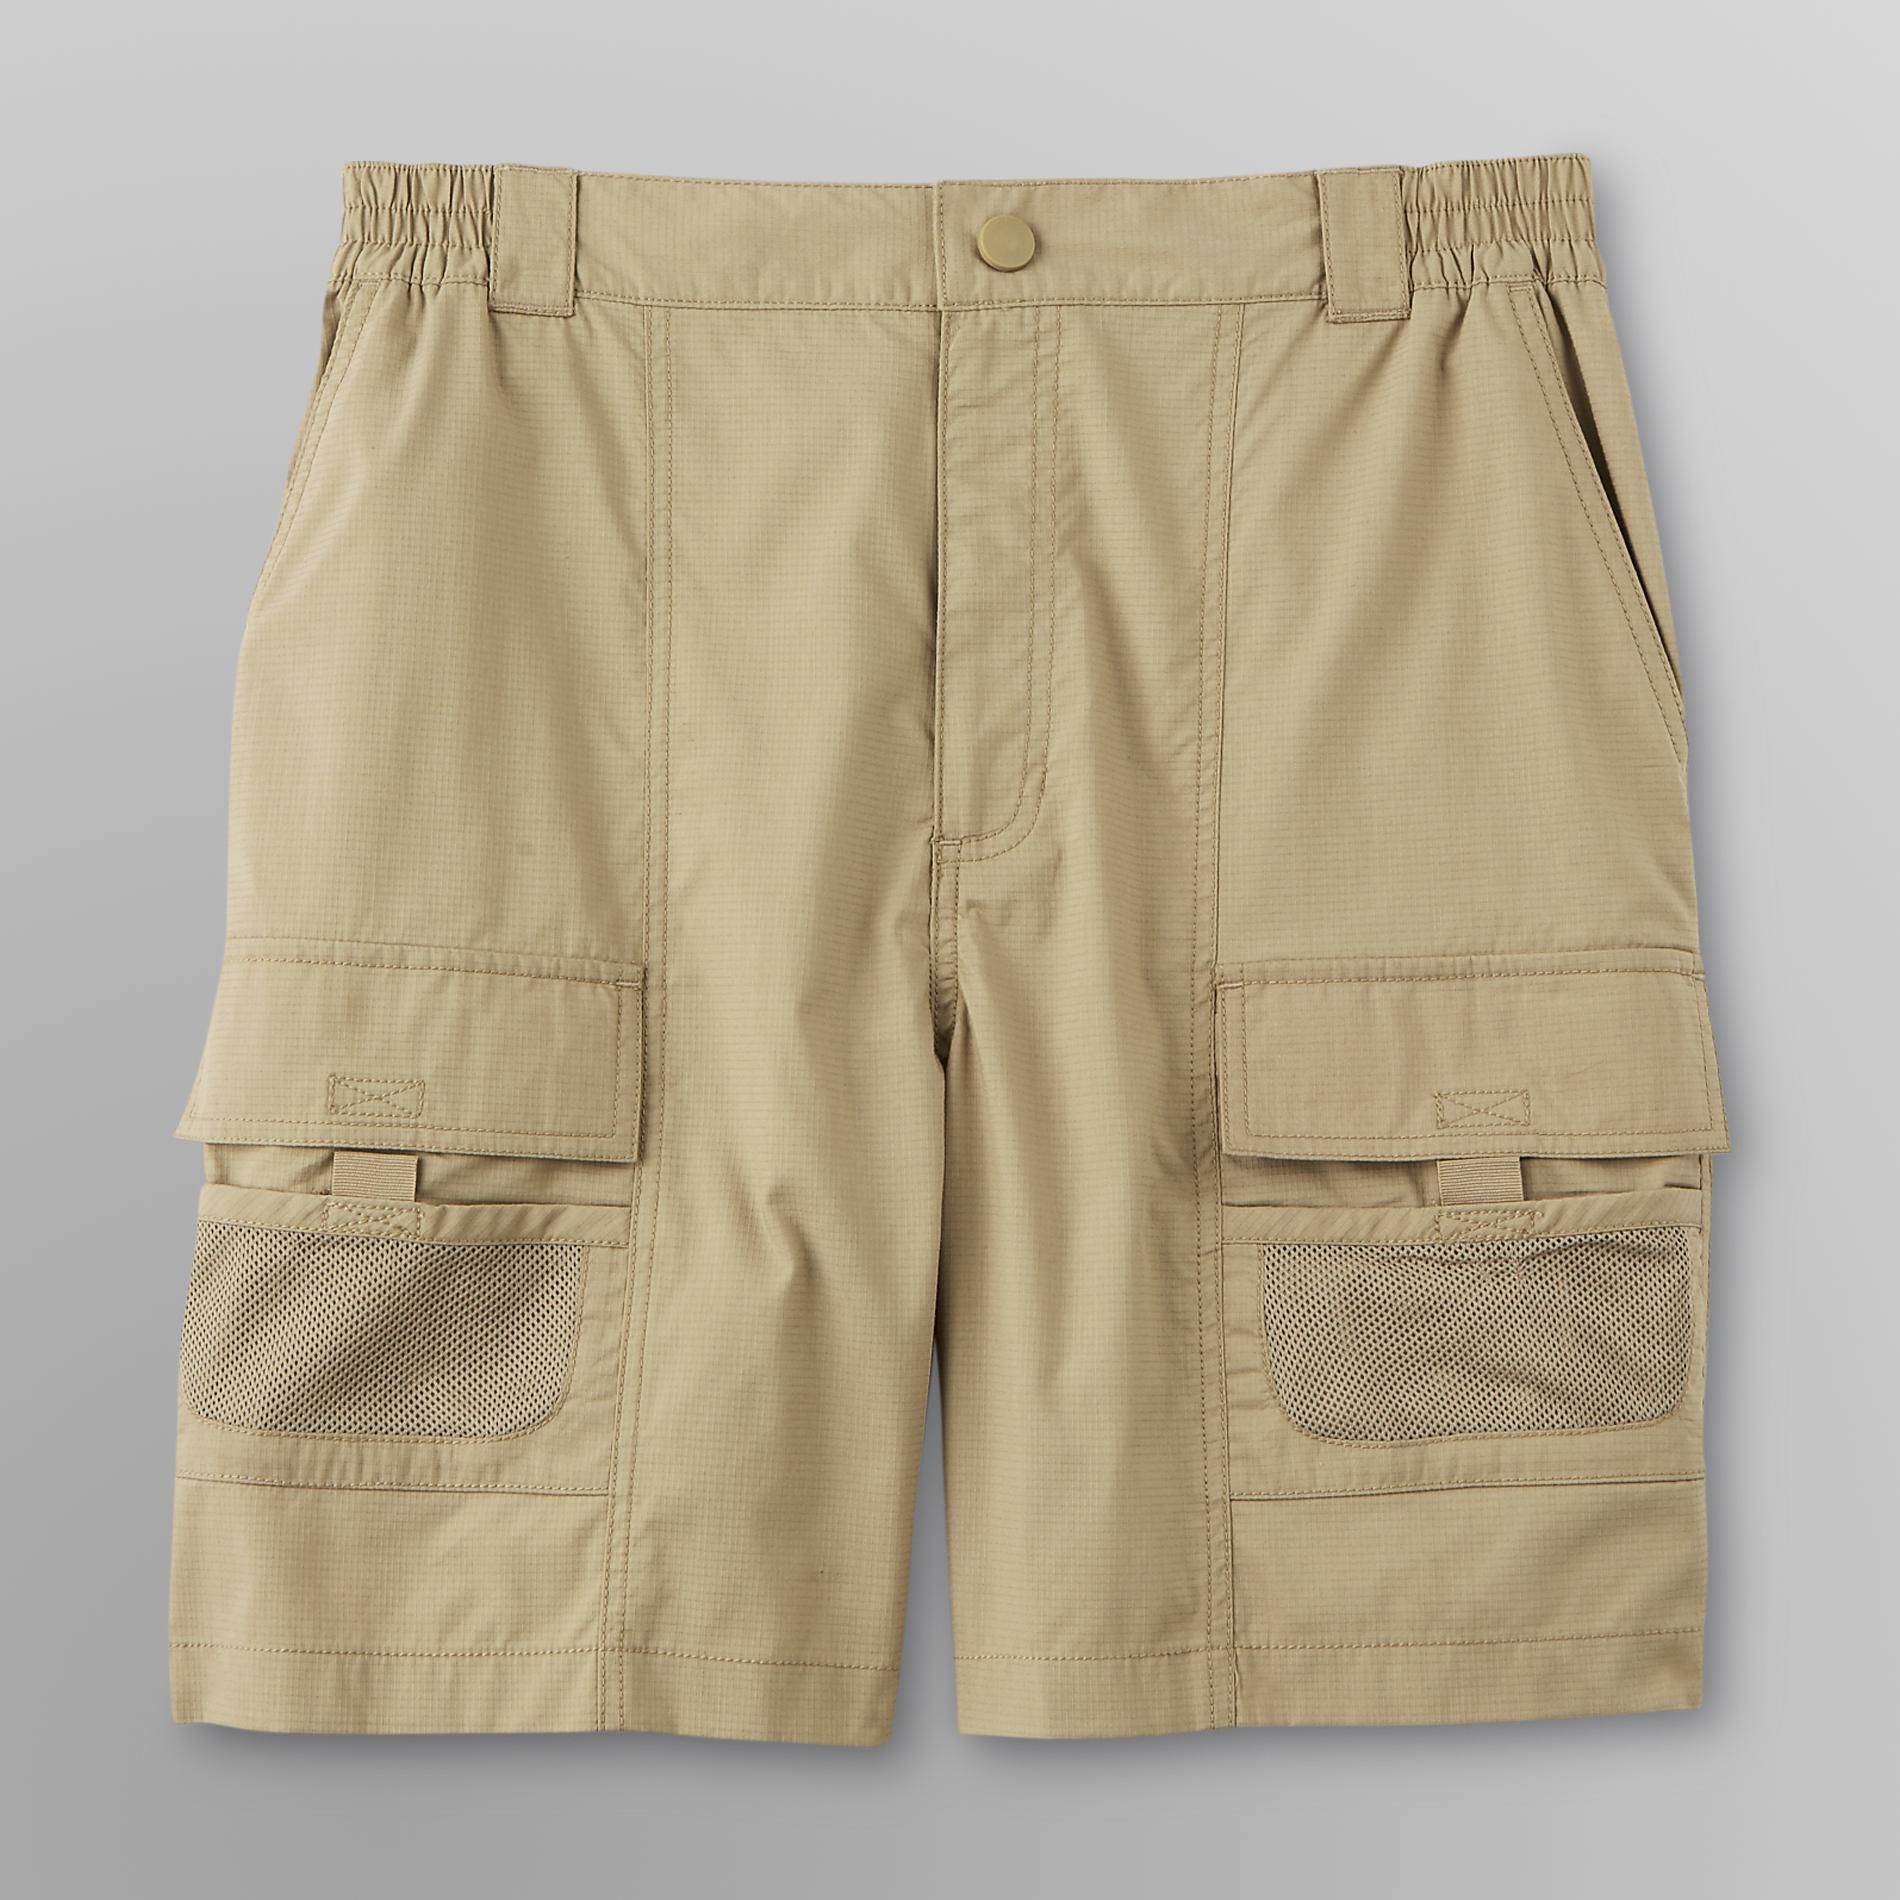 Outdoor Life Men's Ripstop Cargo Shorts